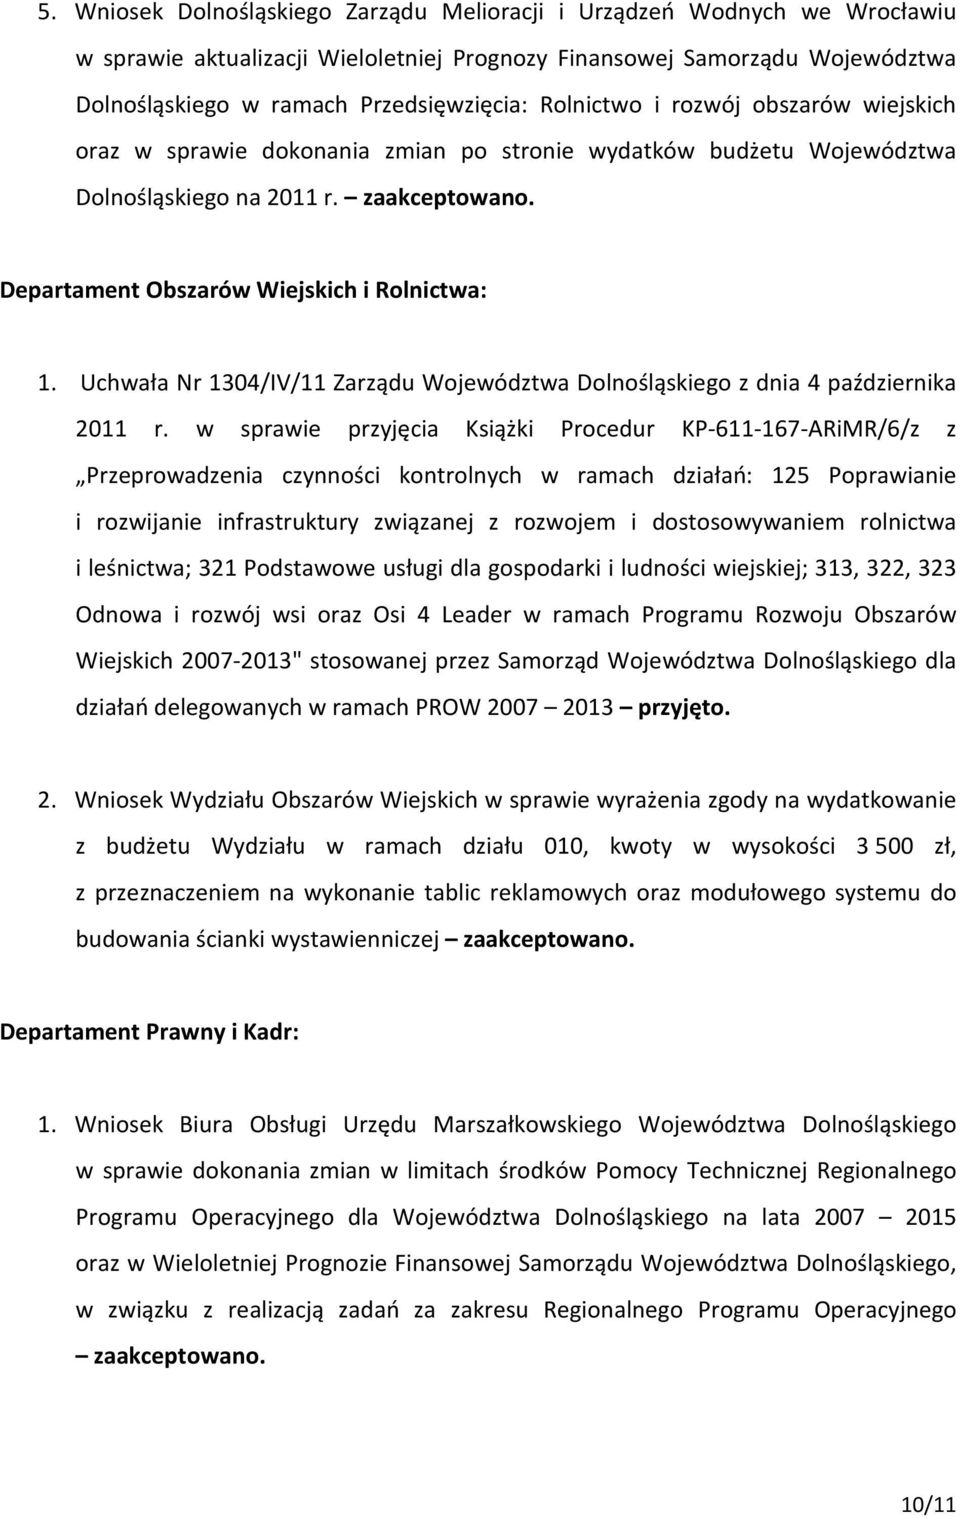 Uchwała Nr 1304/IV/11 Zarządu Województwa Dolnośląskiego z dnia 4 października 2011 r.